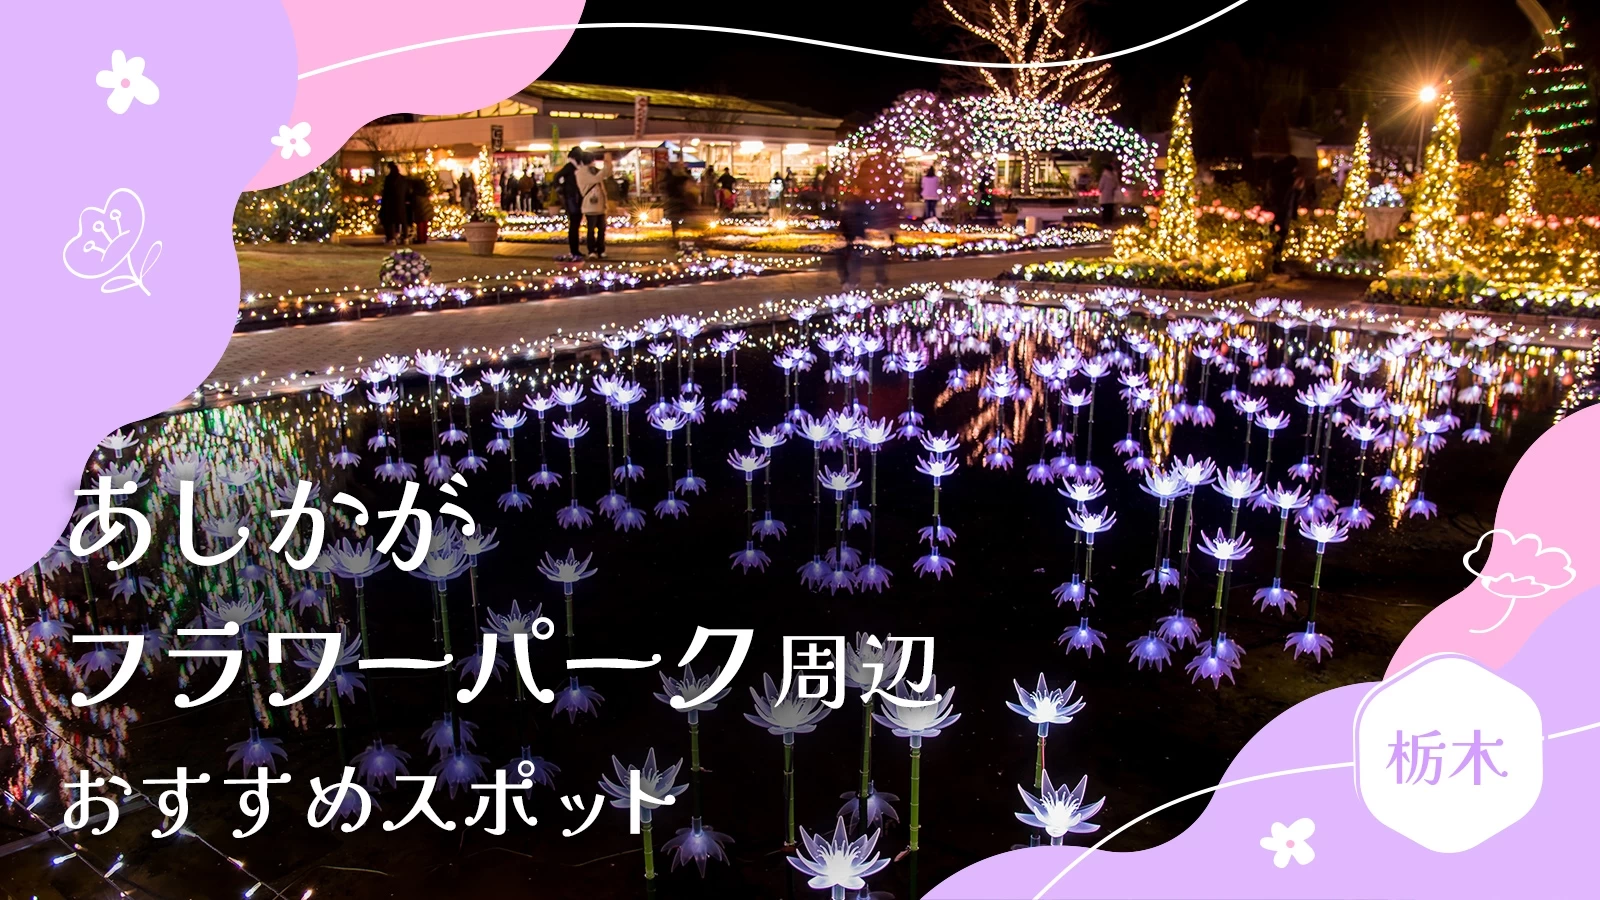 【栃木・足利市】あしかがフラワーパーク周辺でおすすめの観光スポット9選